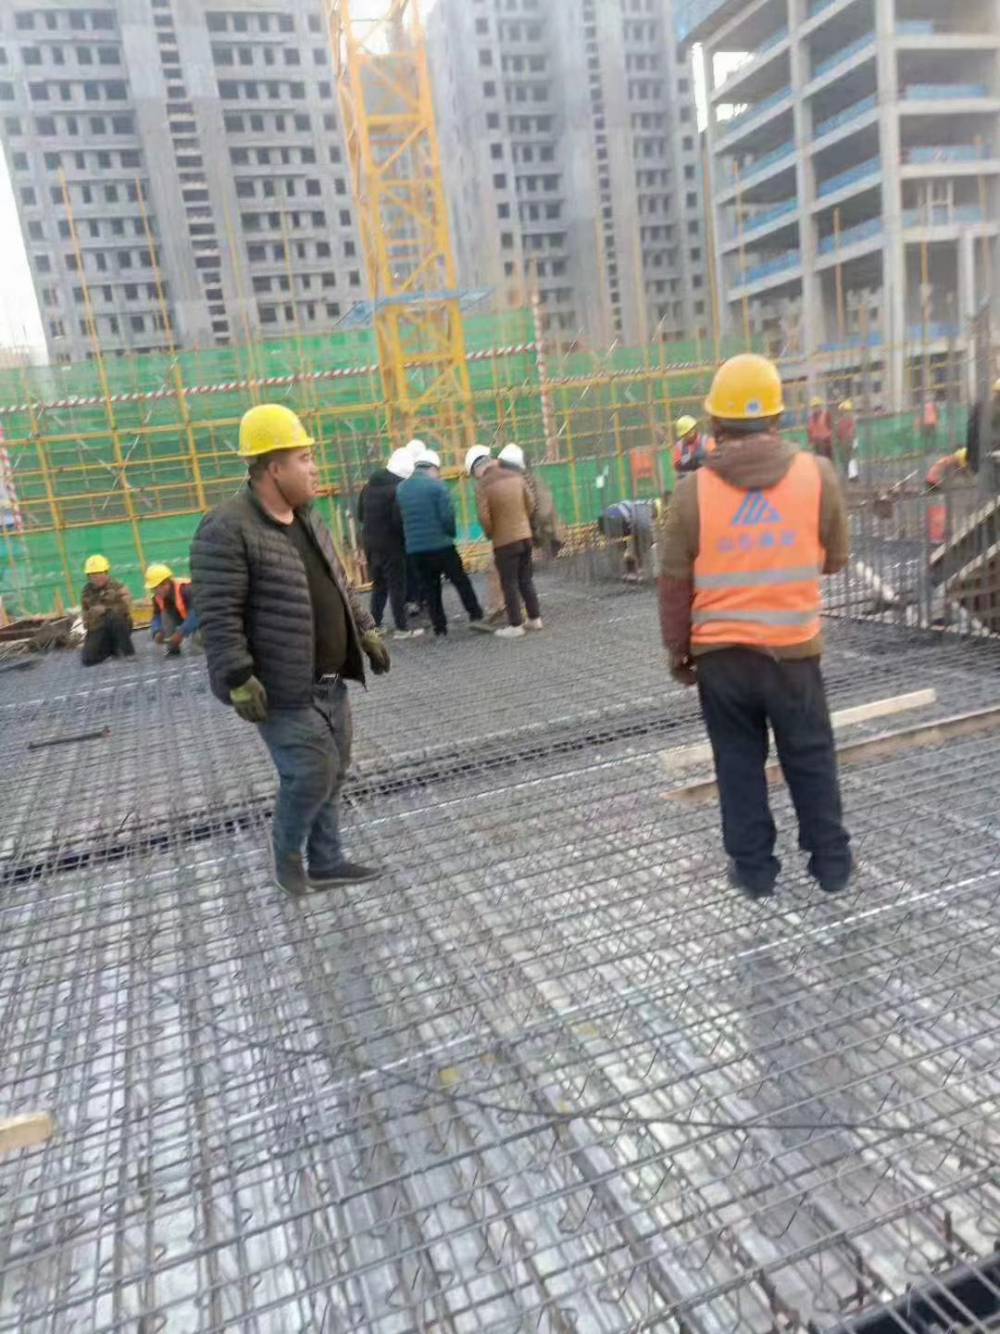 上海供应钢筋桁架楼承板/PC桁架加工厂/生产钢筋桁架楼承板